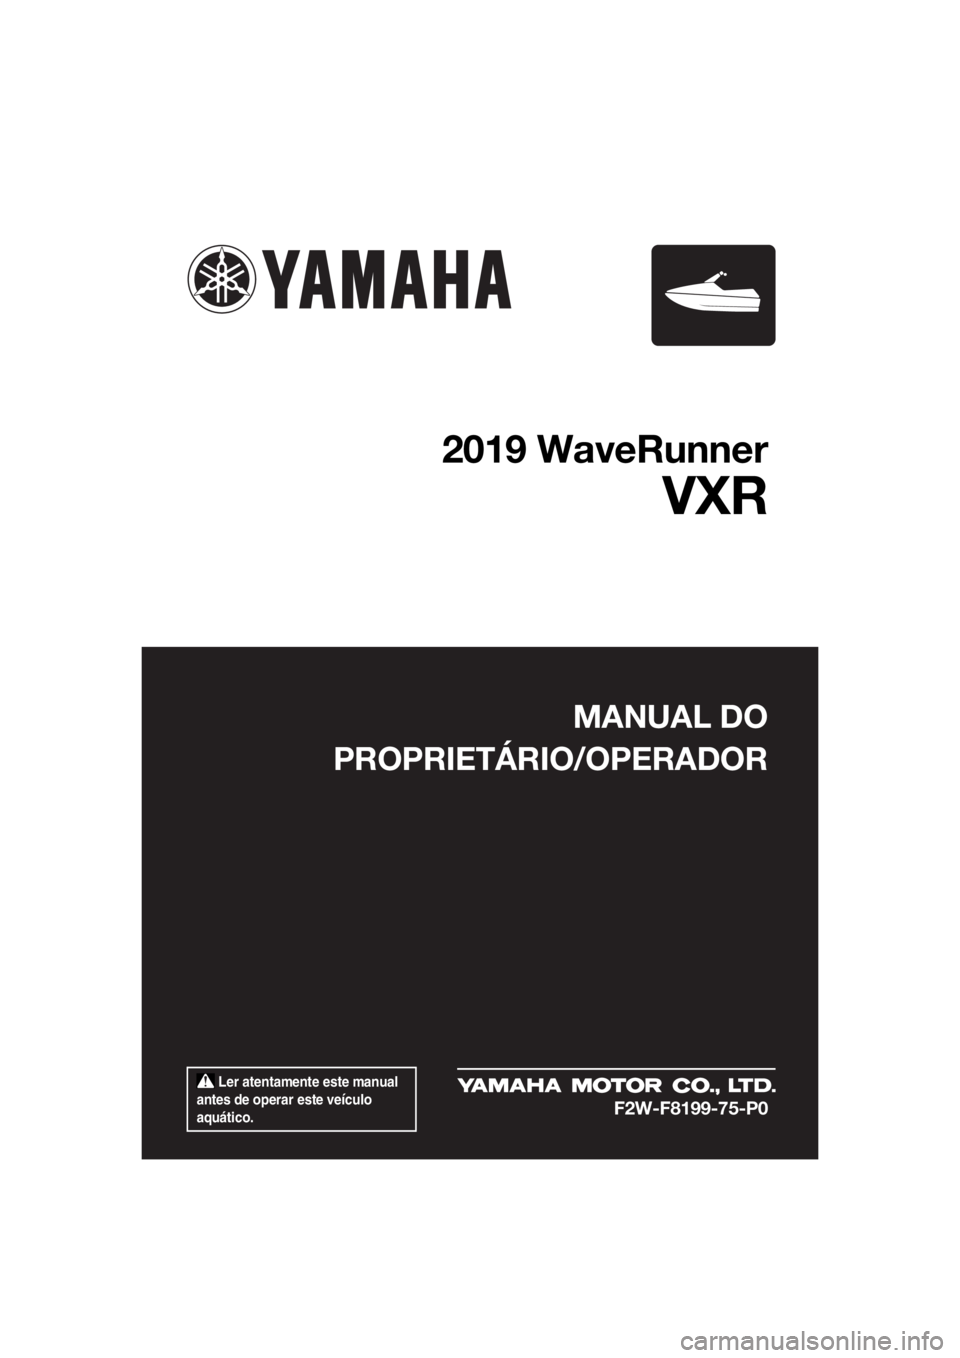 YAMAHA VXR 2019  Manual de utilização (in Portuguese)  Ler atentamente este manual 
antes de operar este veículo 
aquático.
MANUAL DO
PROPRIETÁRIO/OPERADOR
2019 WaveRunner
VXR
F2W-F8199-75-P0
UF2W75P0.book  Page 1  Wednesday, July 11, 2018  9:41 AM 